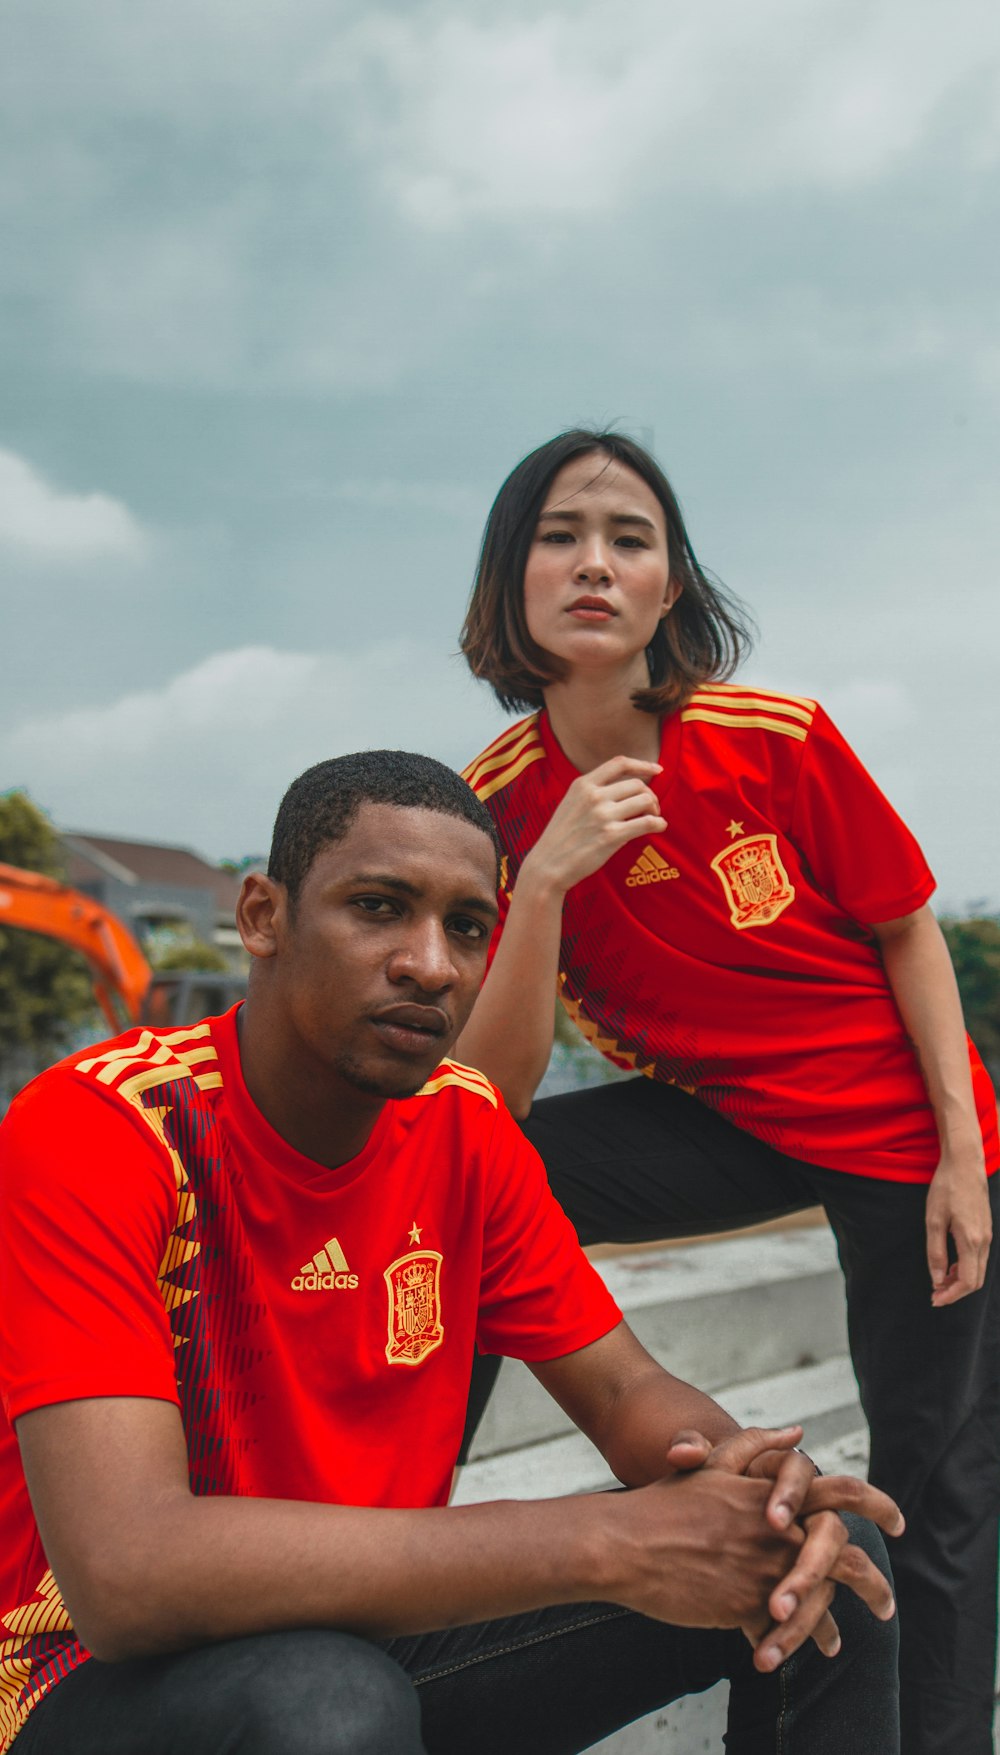 Foto Mujer con camiseta roja y amarilla junto a hombre con camiseta adidas  roja y amarilla – Imagen #football gratis en Unsplash